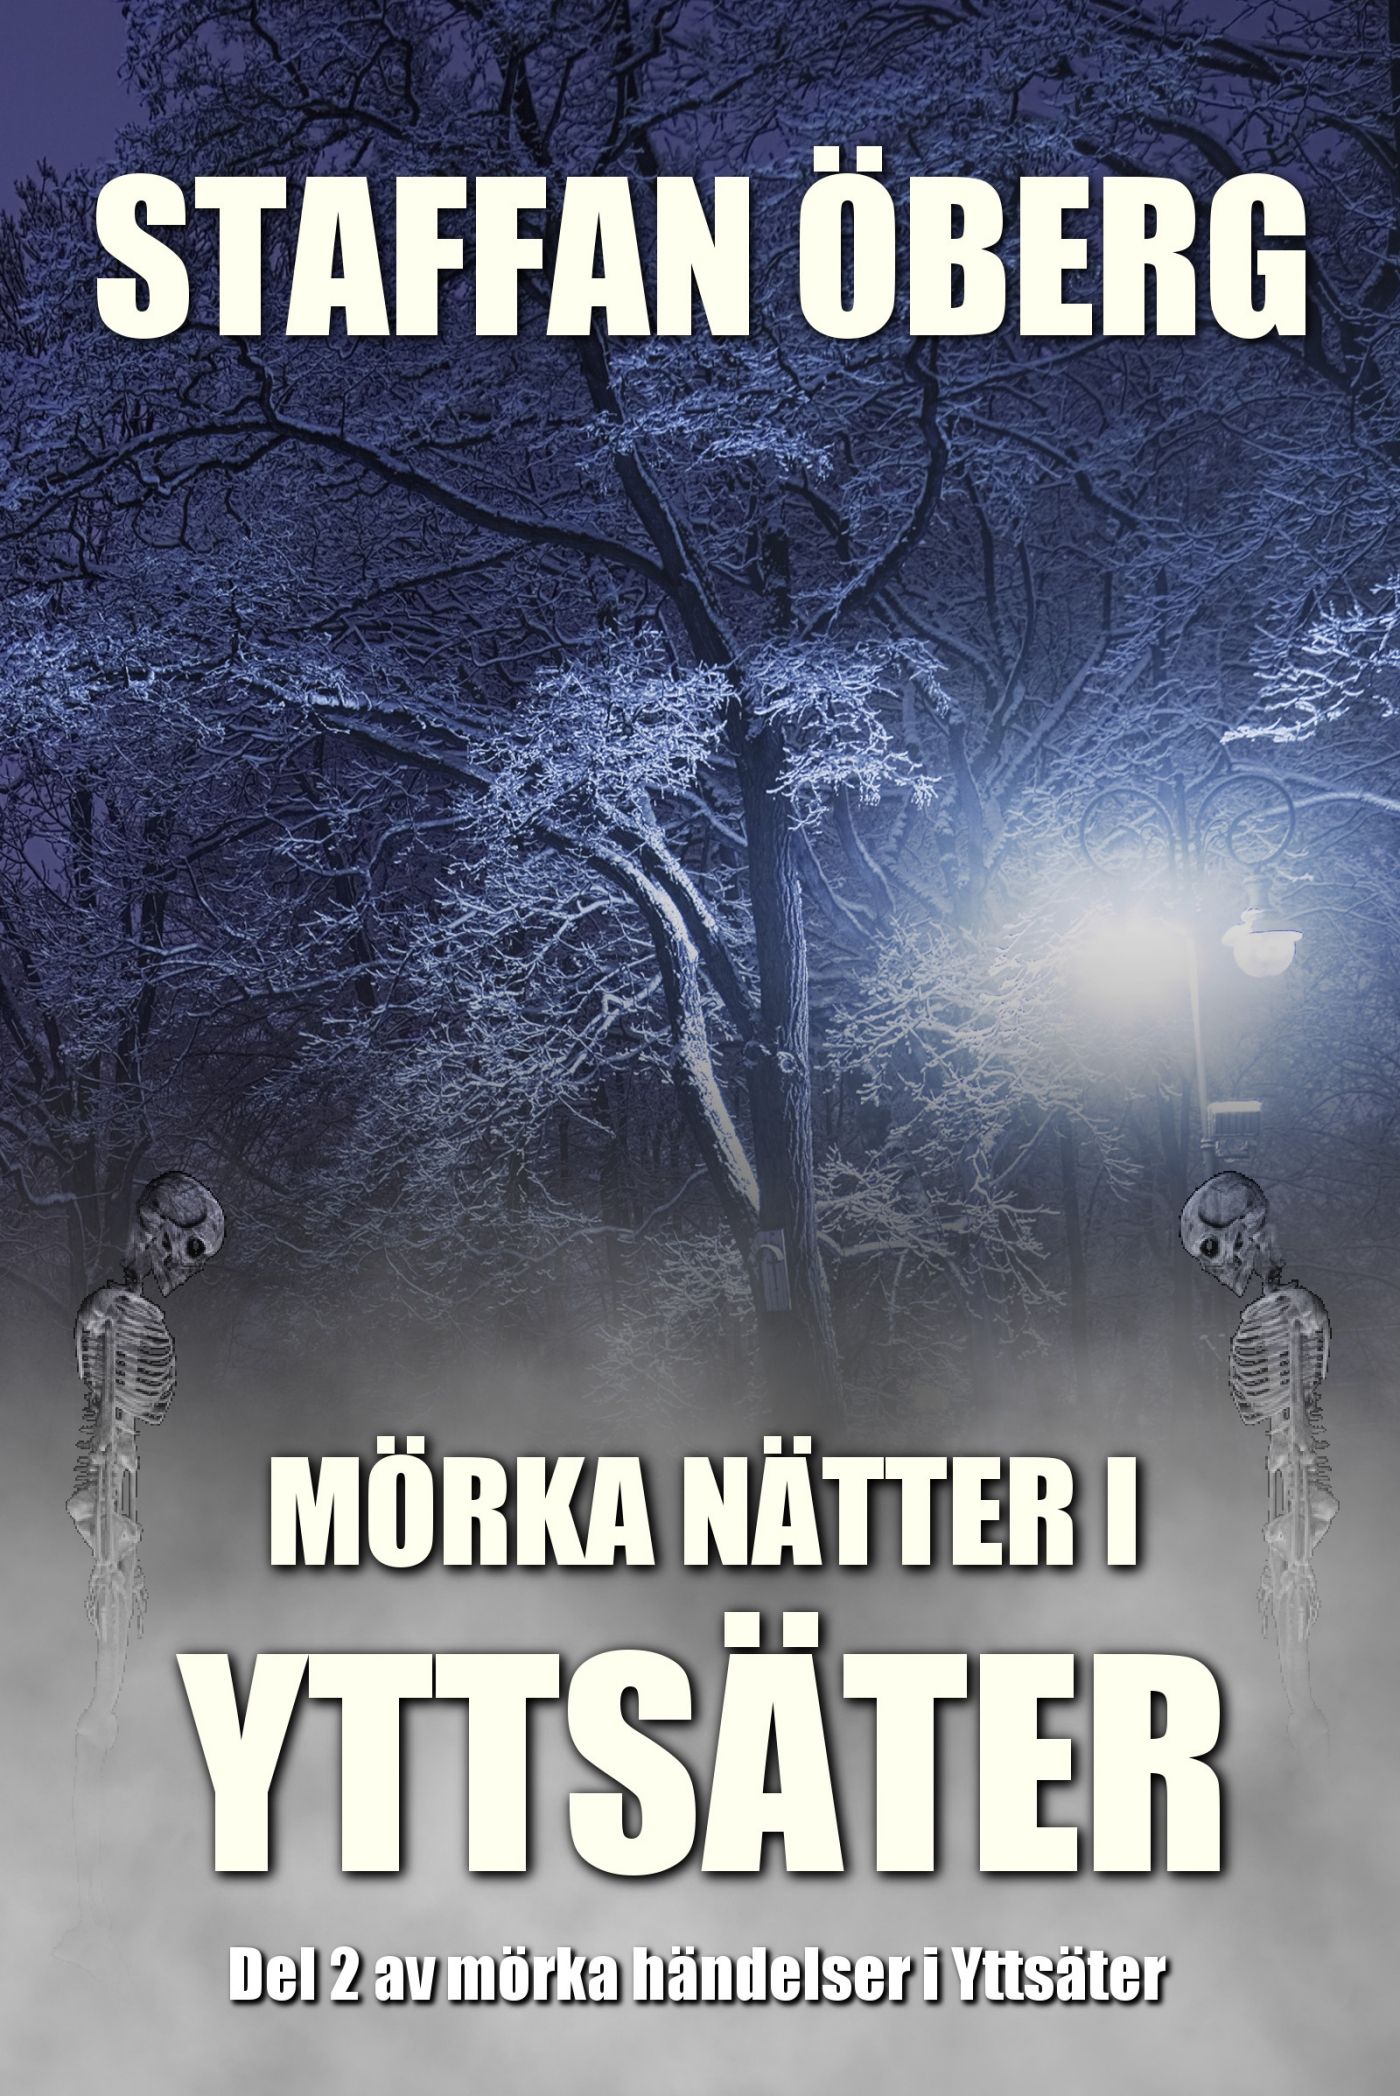 Mörka nätter i Yttsäter, audiobook by Staffan Öberg